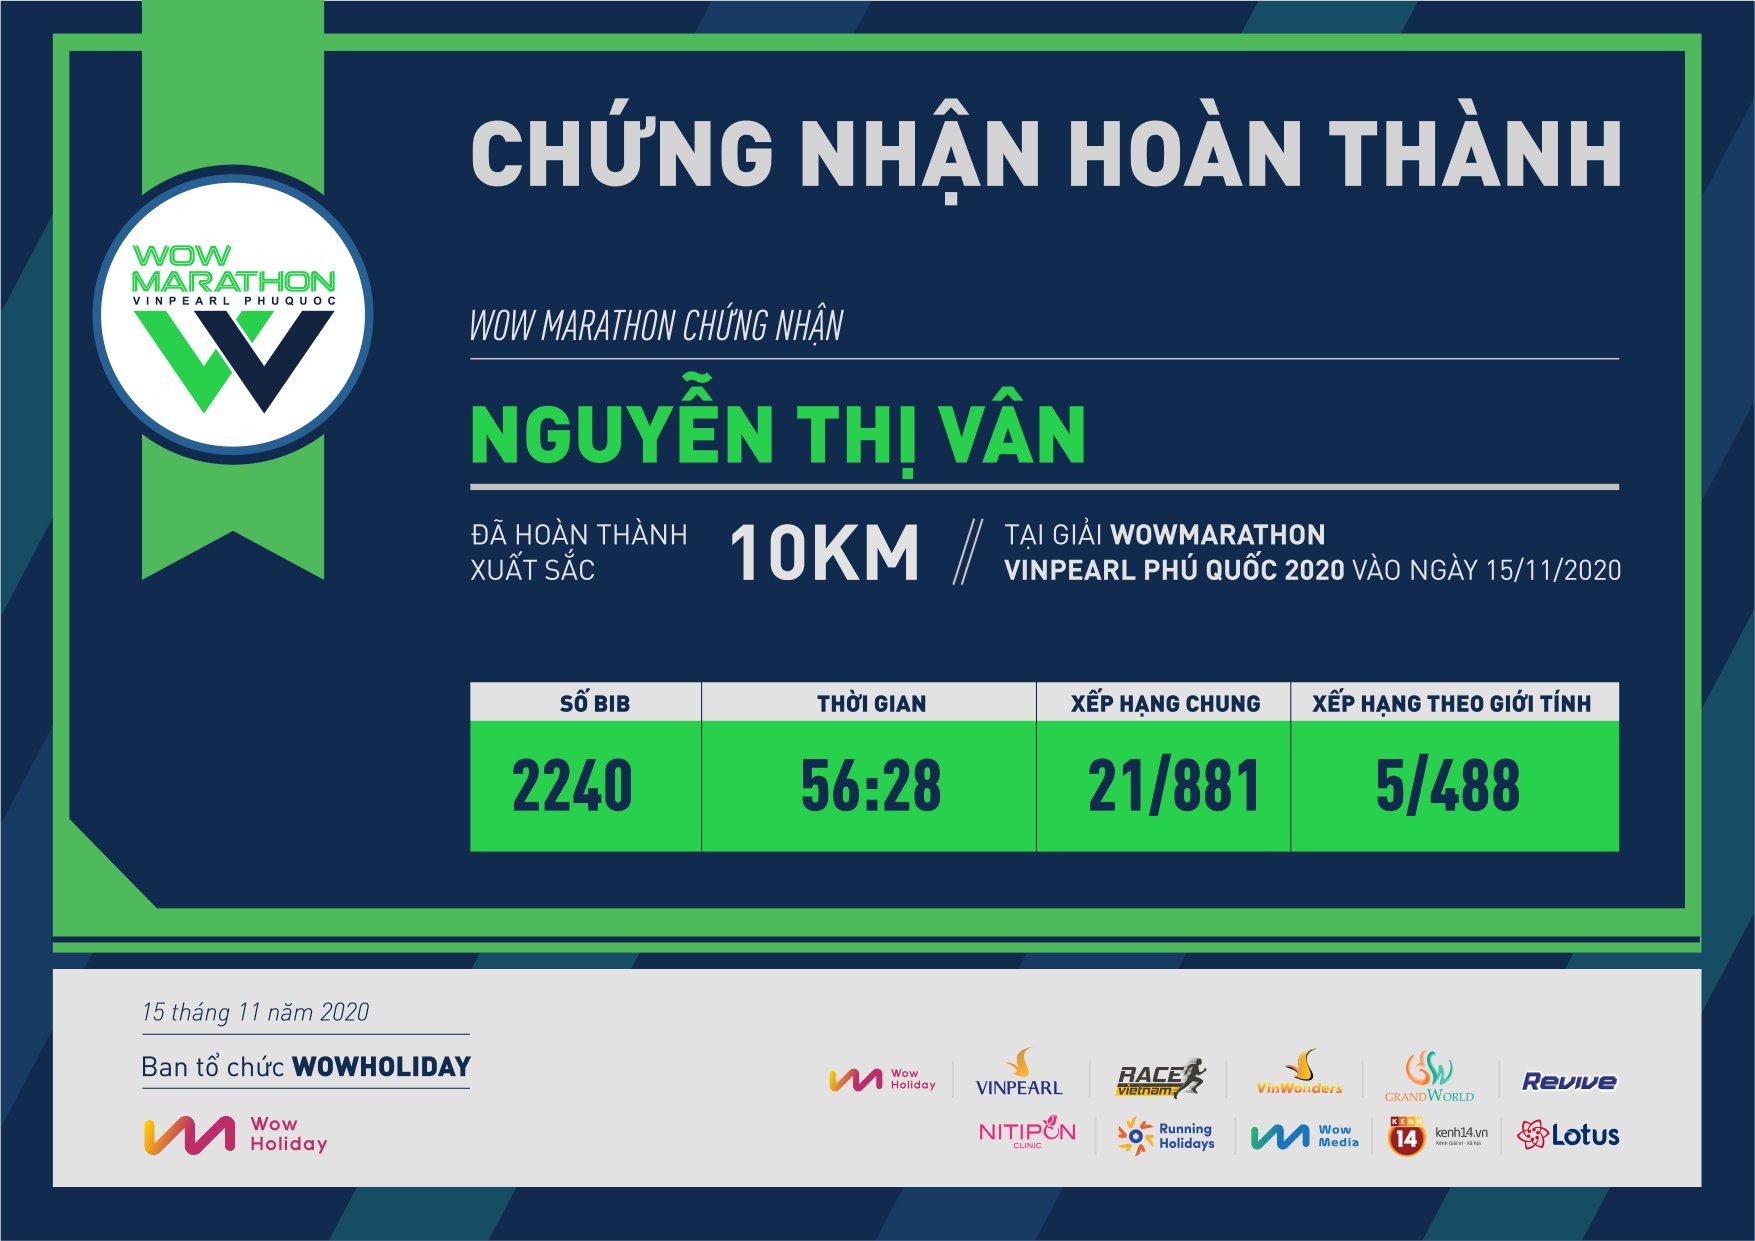 2240 - Nguyễn Thị Vân